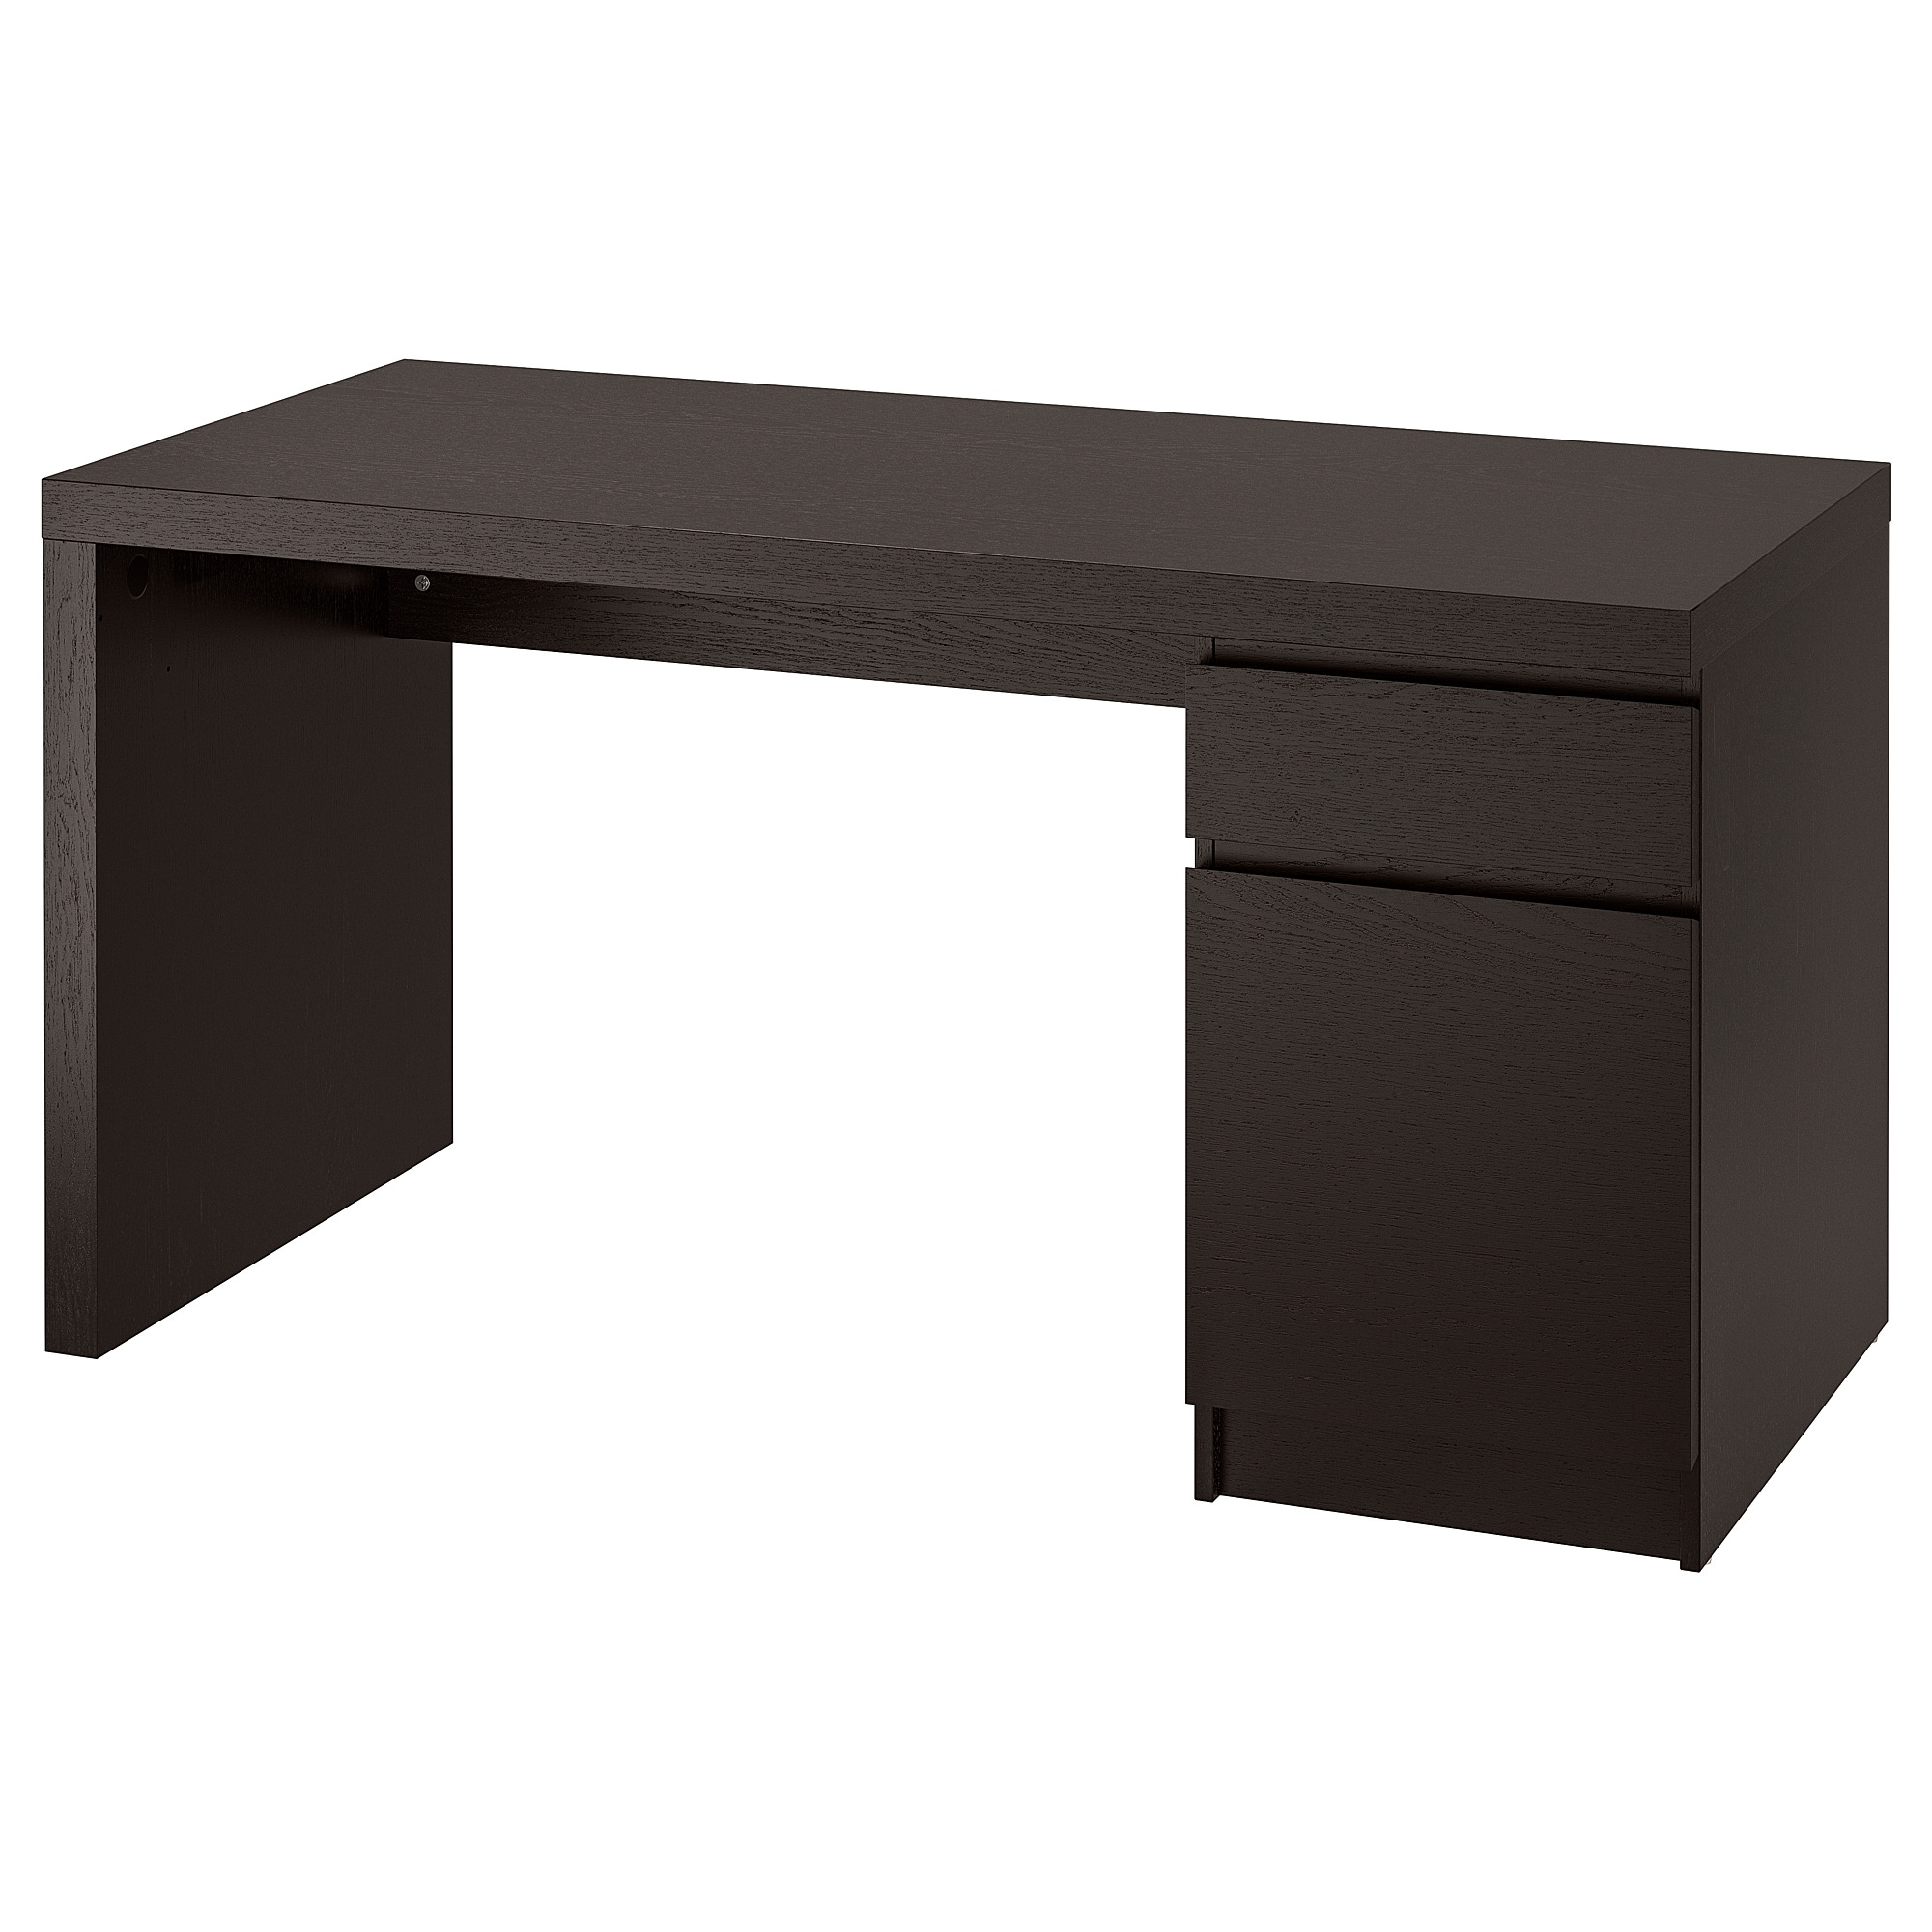 Malm Bureau - Brun Noir 140X65 Cm concernant Ikea Maroc Bureau